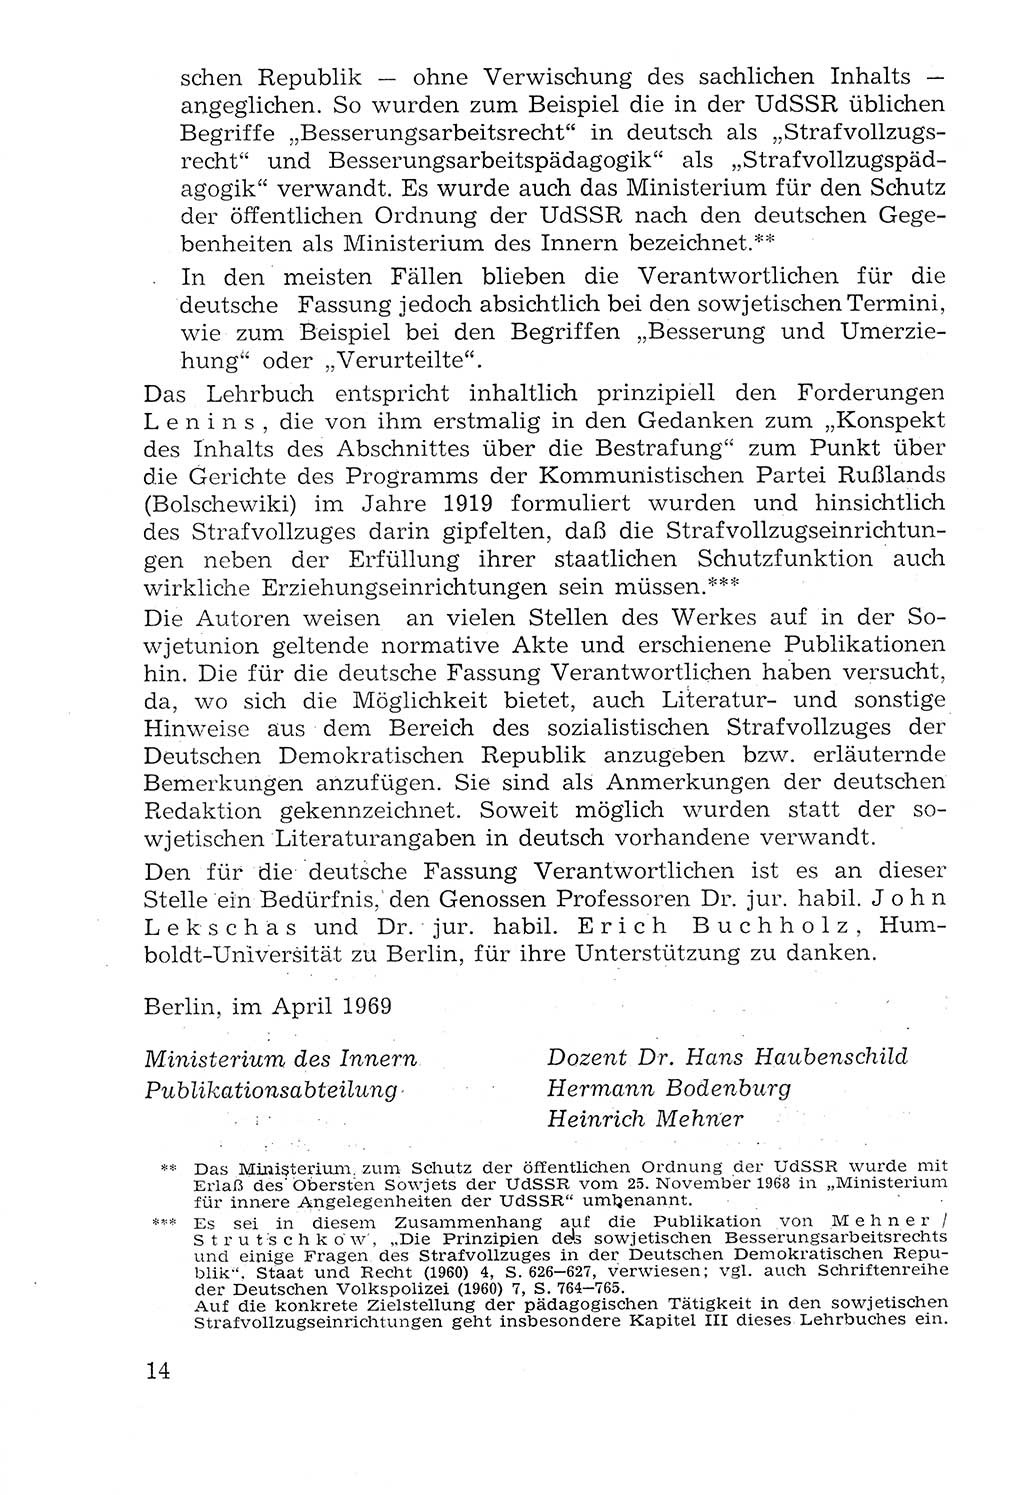 Lehrbuch der Strafvollzugspädagogik [Deutsche Demokratische Republik (DDR)] 1969, Seite 14 (Lb. SV-Pd. DDR 1969, S. 14)